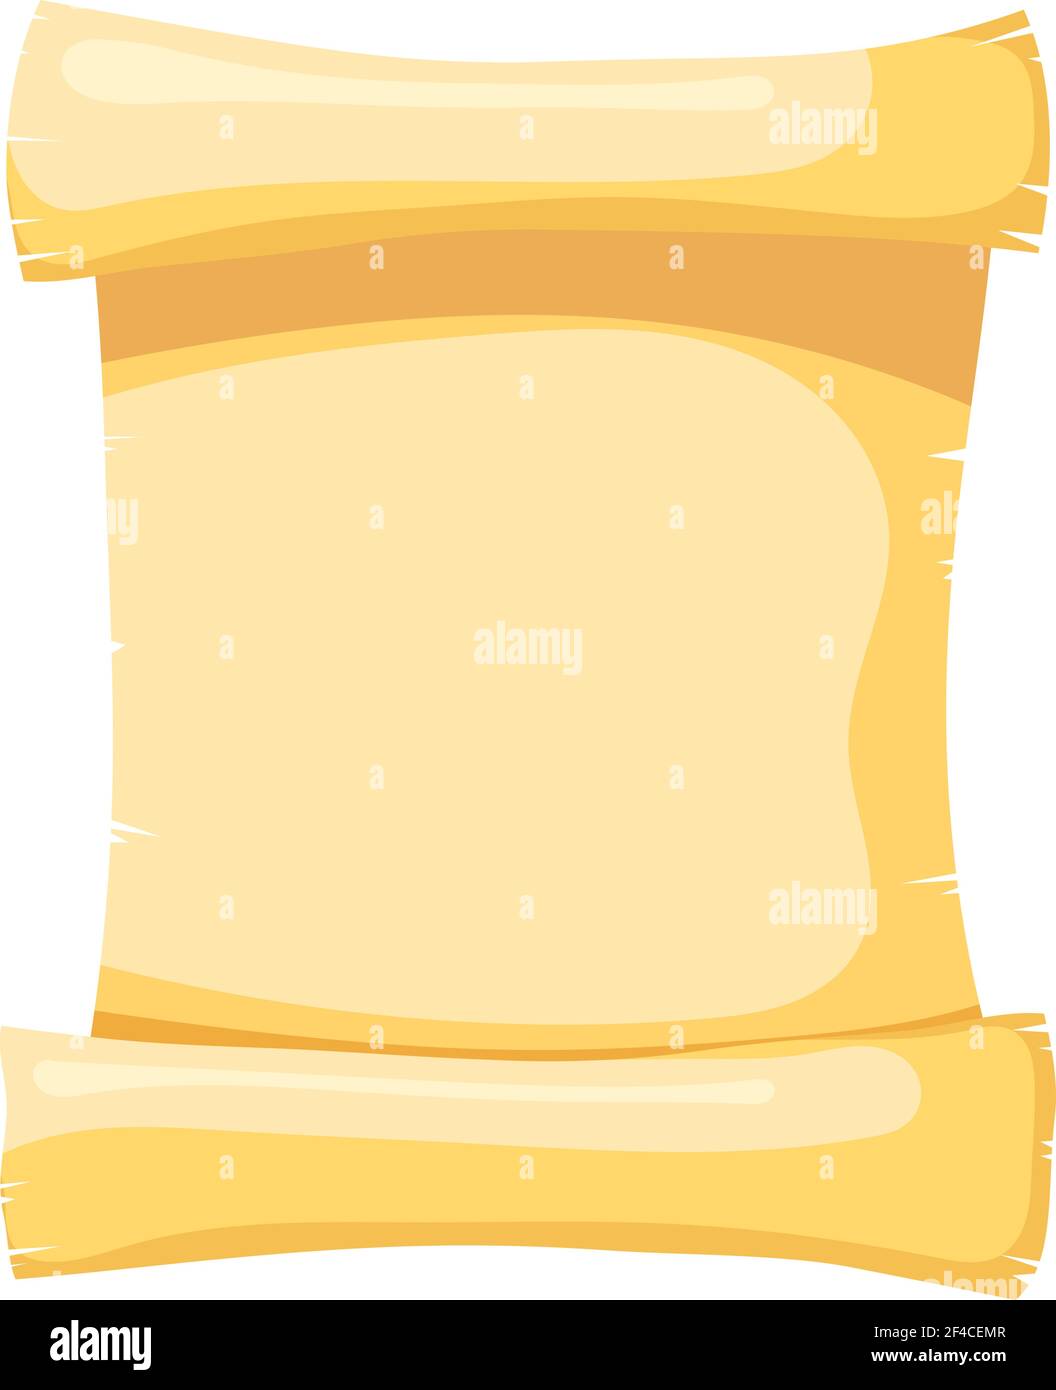 Pergamena gialla Immagini Vettoriali Stock - Alamy